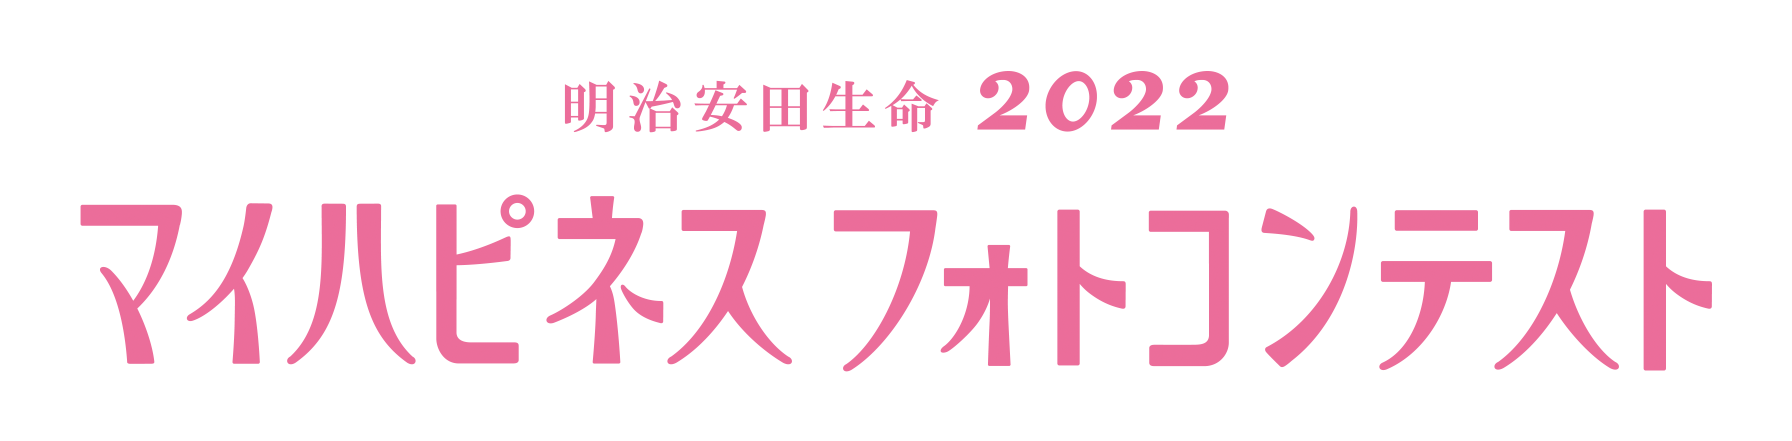 明治安田生命 2021 マイハピネスフォトコンテスト